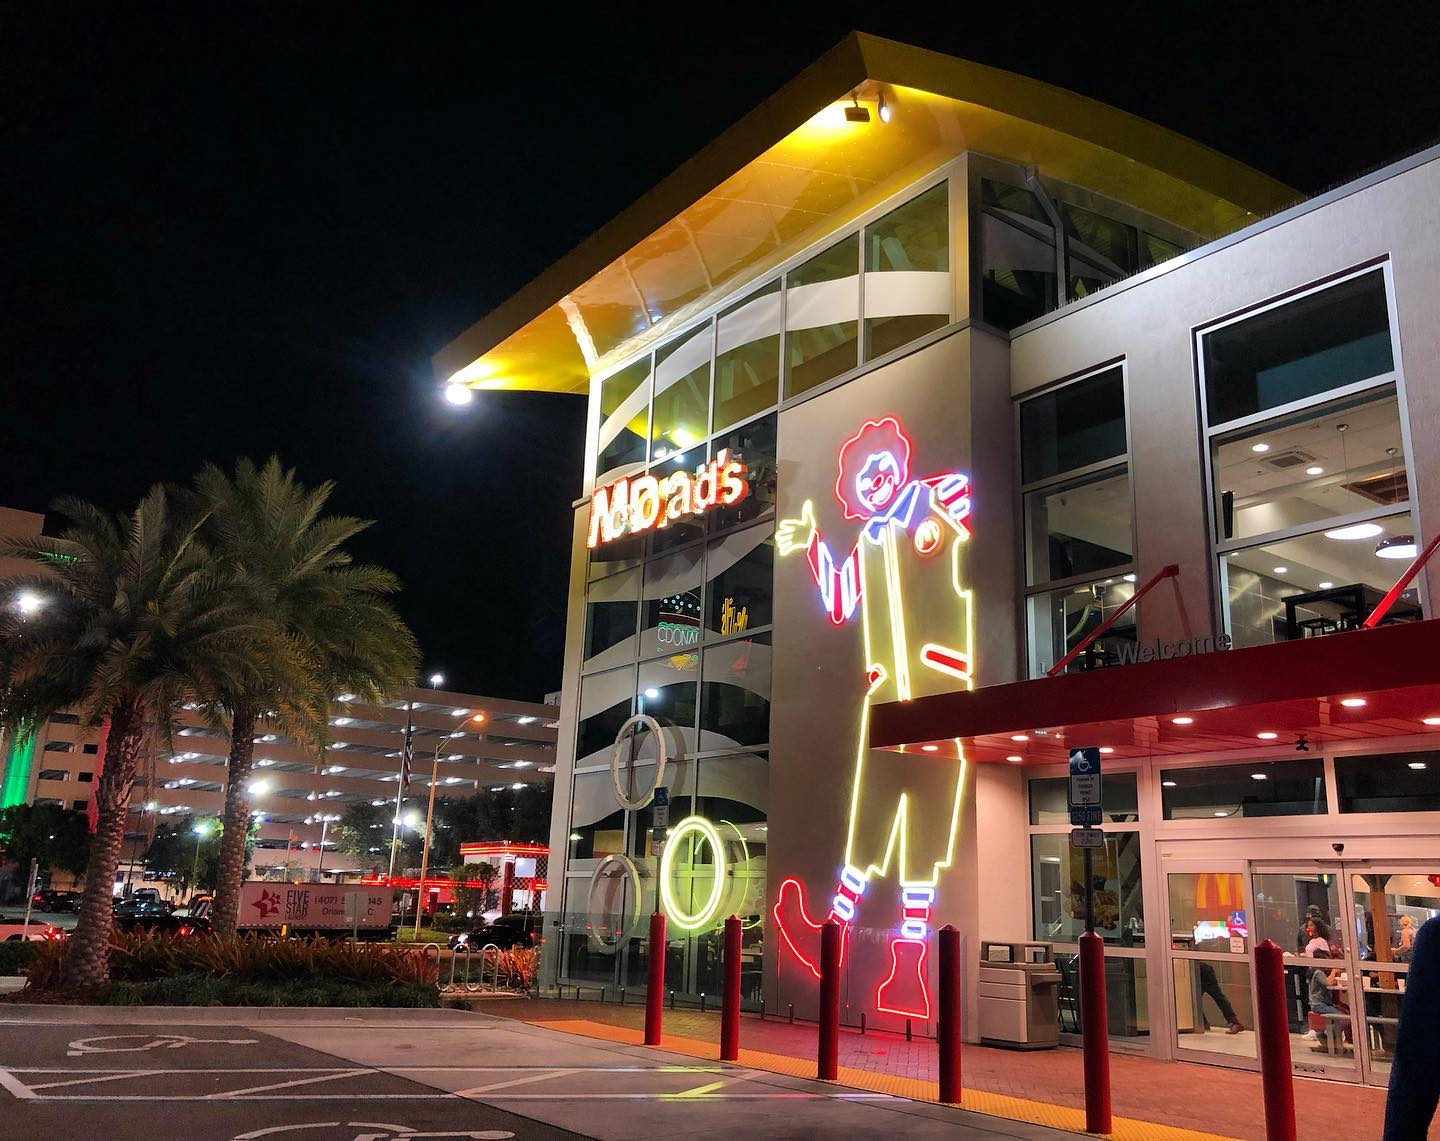 The Biggest McDonald's in Orlando